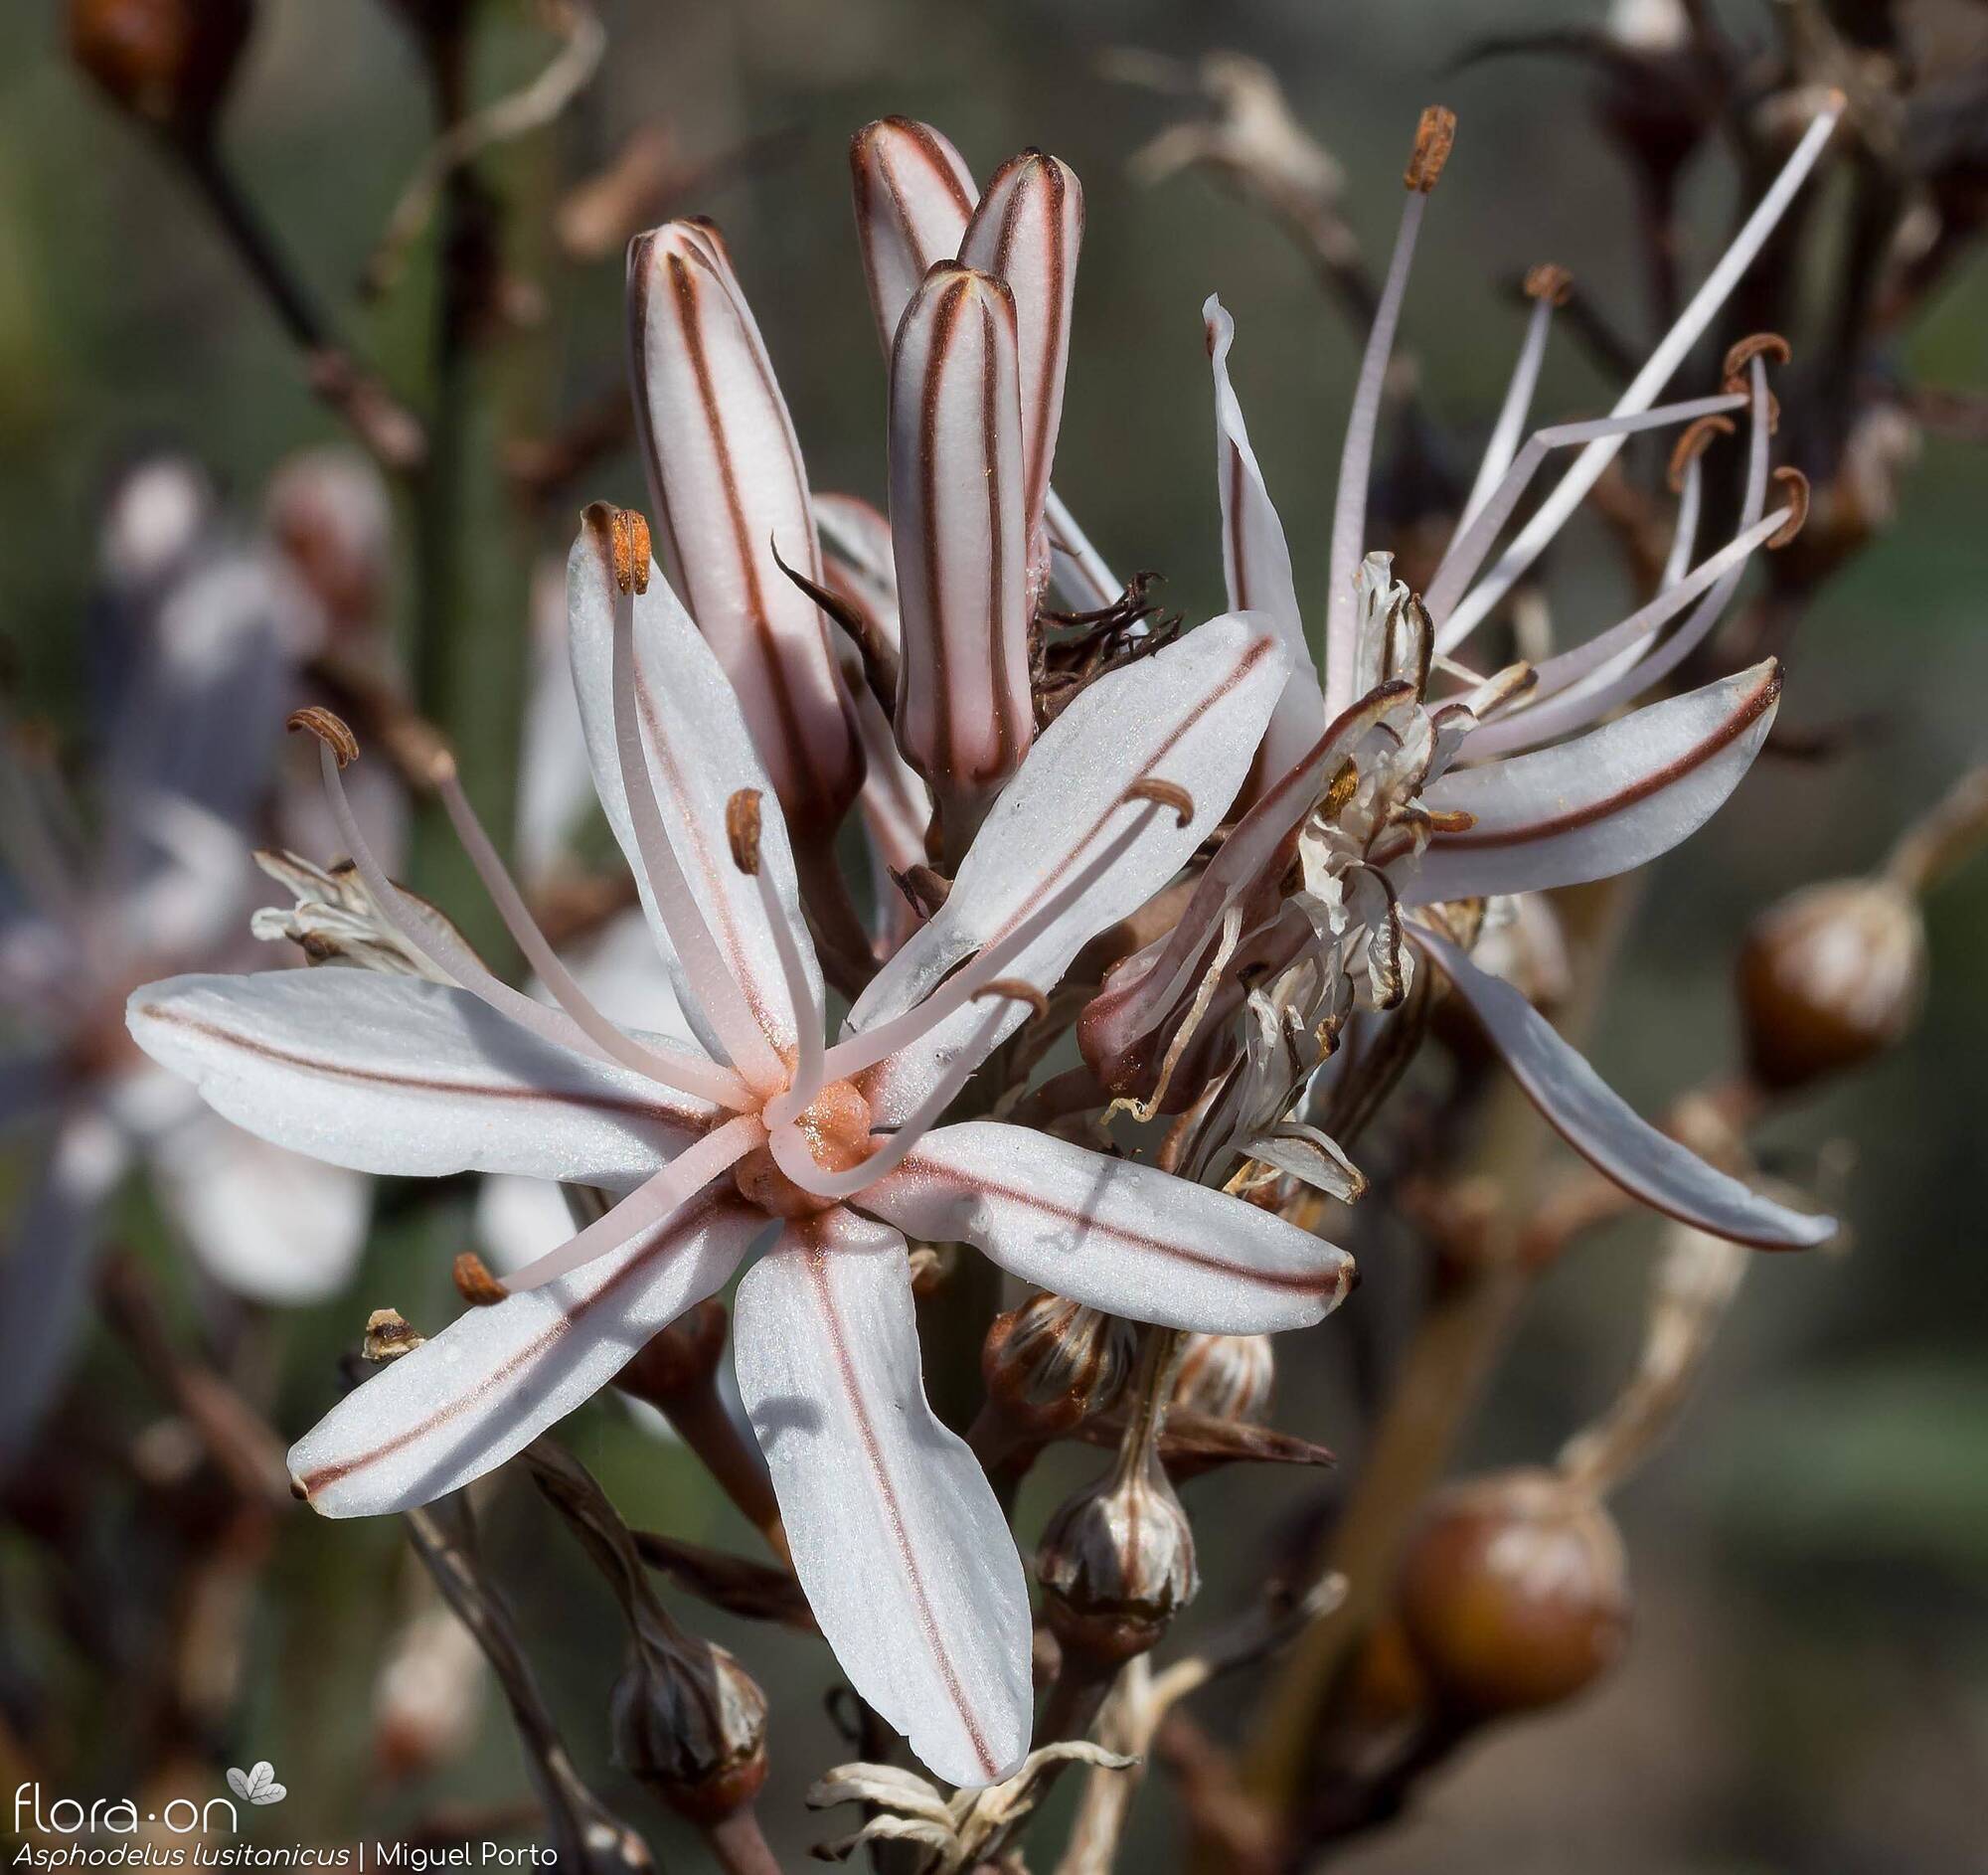 Asphodelus lusitanicus - Flor (close-up) | Miguel Porto; CC BY-NC 4.0